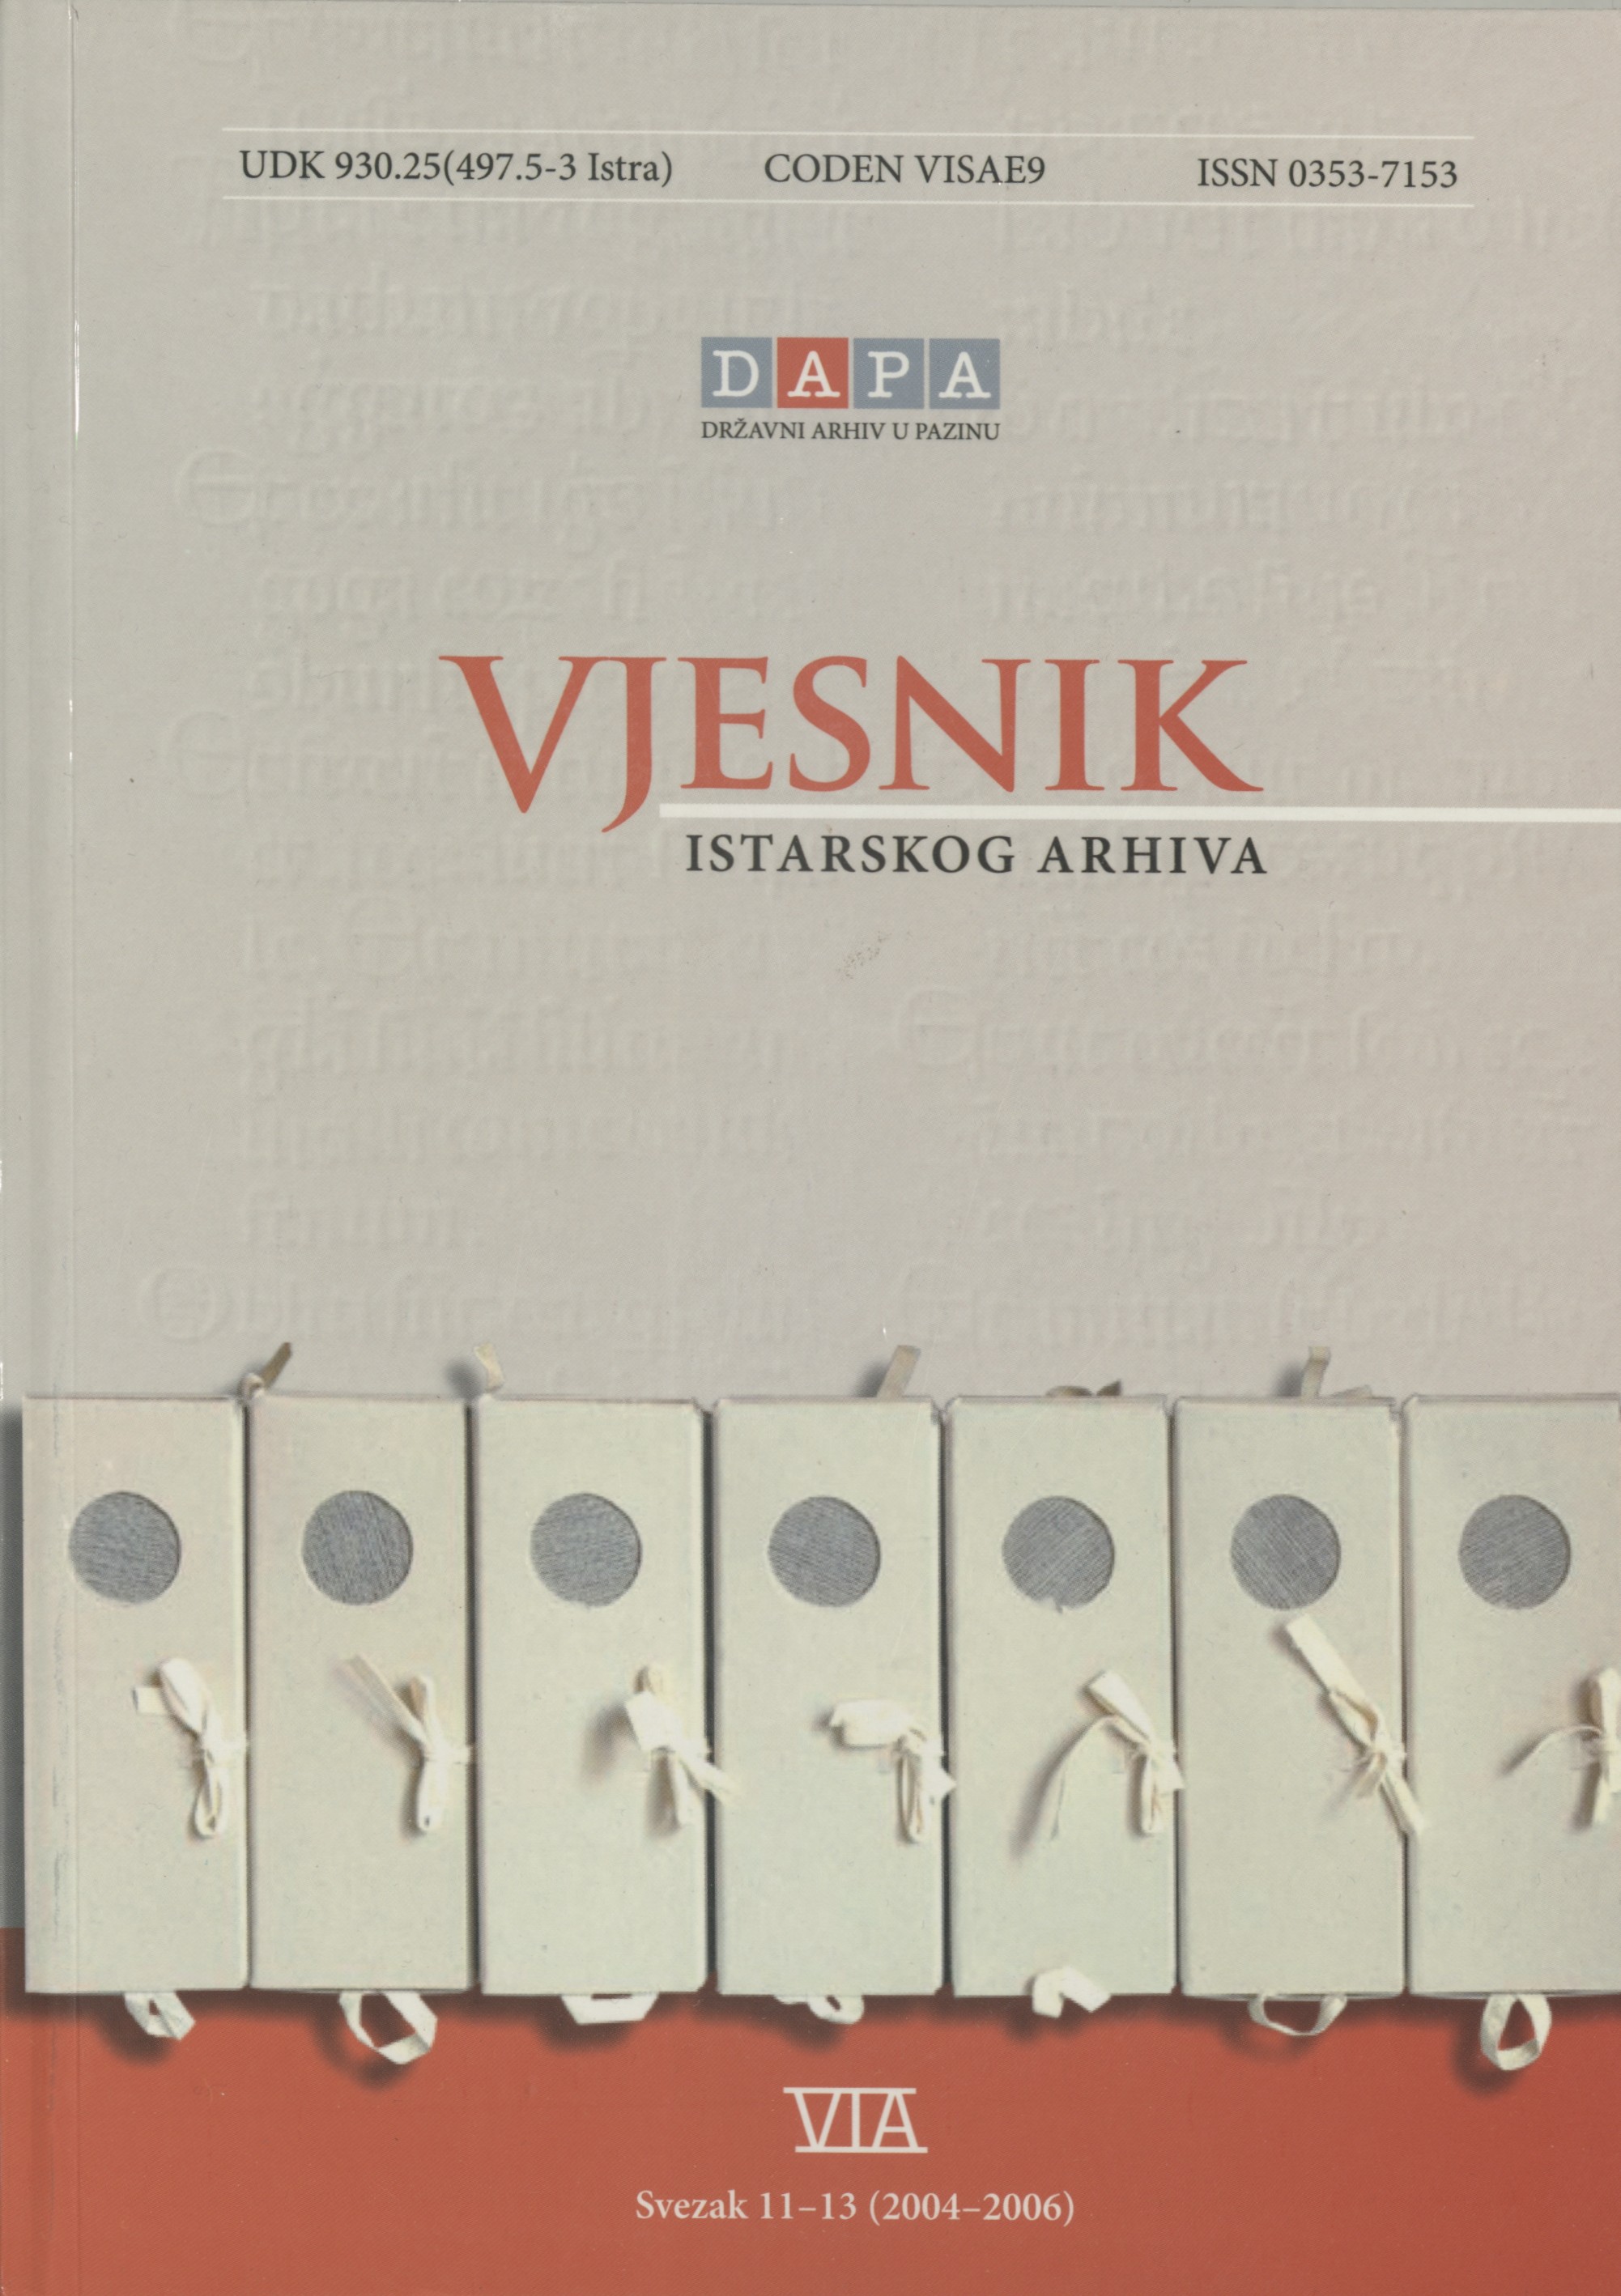 					Visualizza Vjesnik istarskog arhiva sv. 11-13 (2004.-2006.)
				